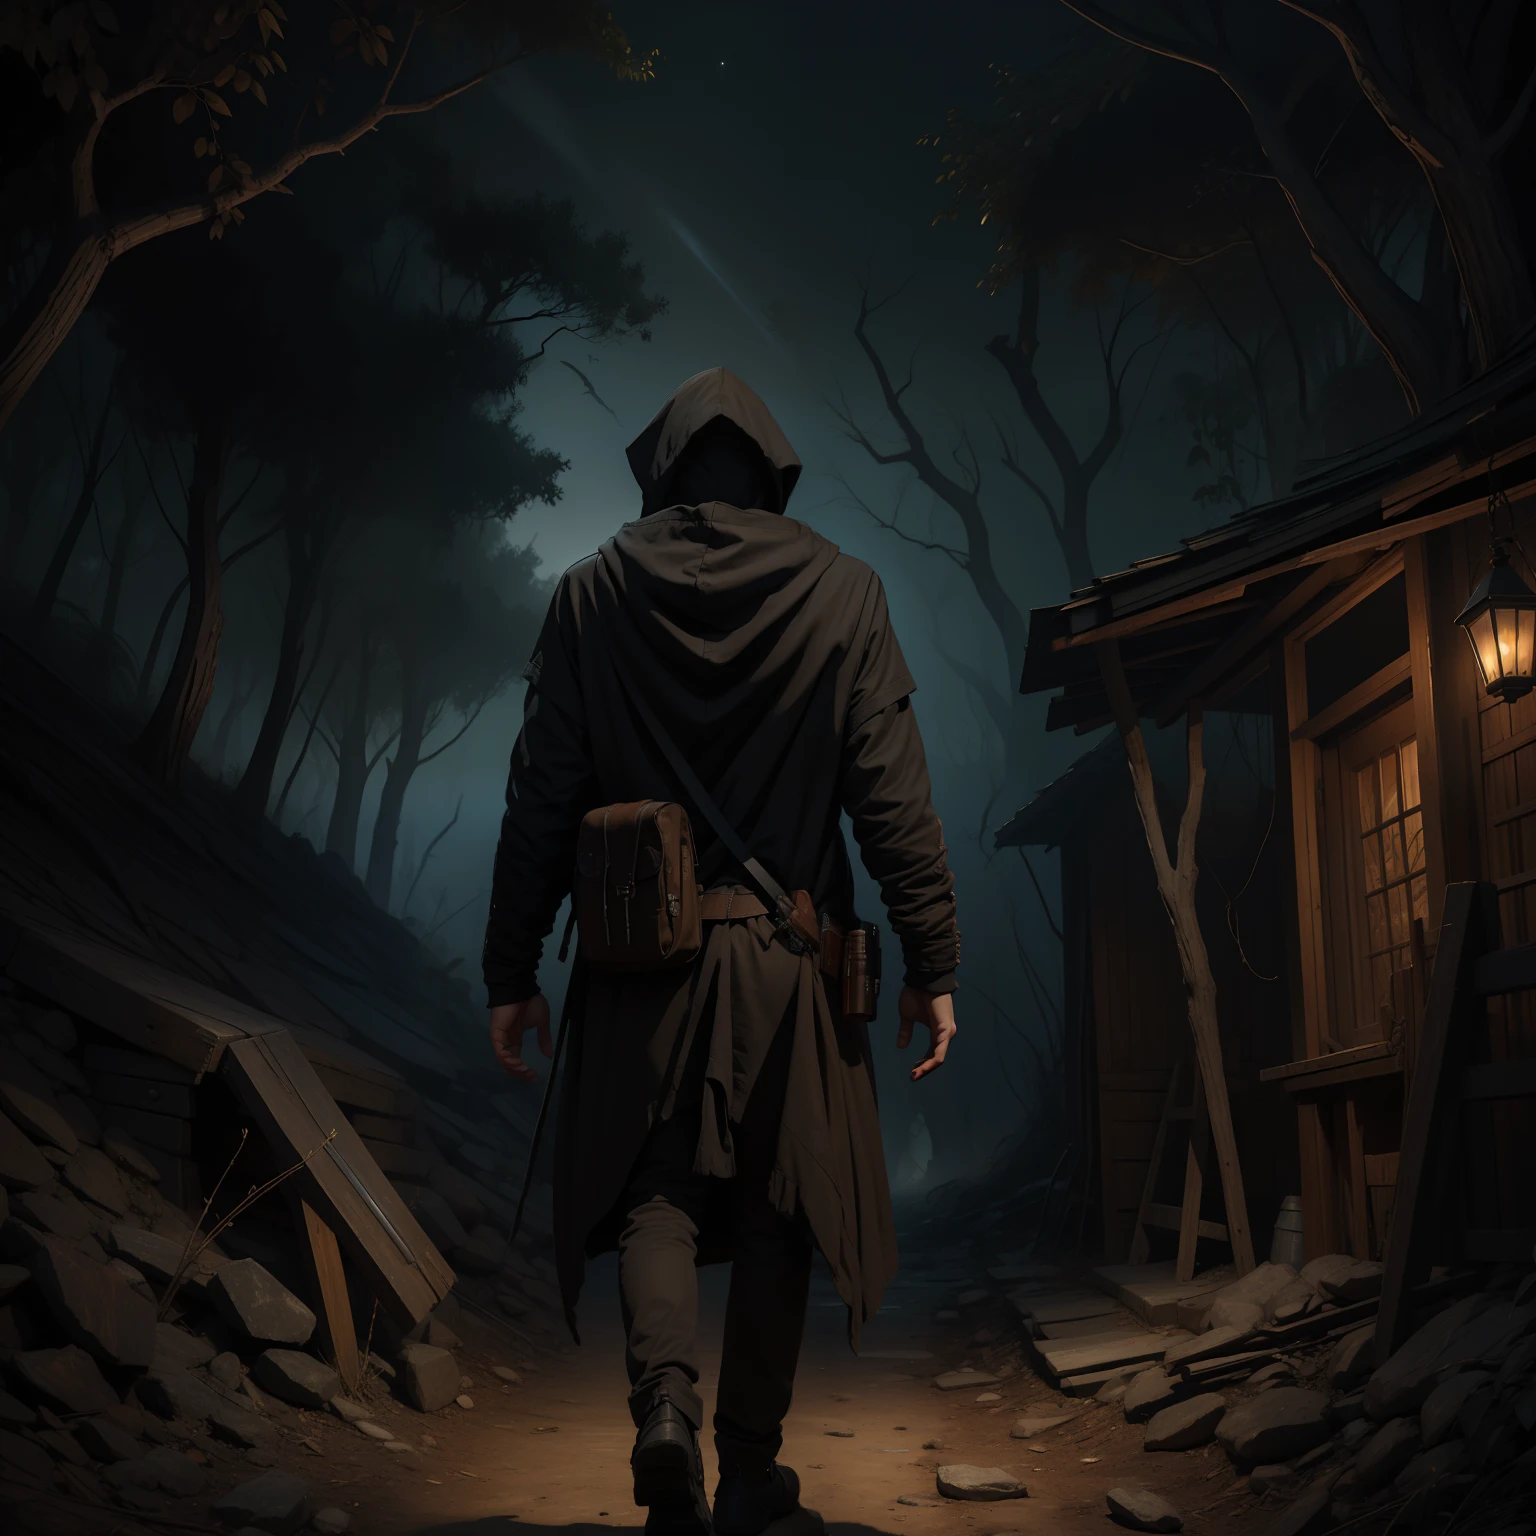 乾燥した森の中の暗い小道を、フードをかぶり銃を手に歩いている男がいる。ダークファンタジーの19世紀の絵